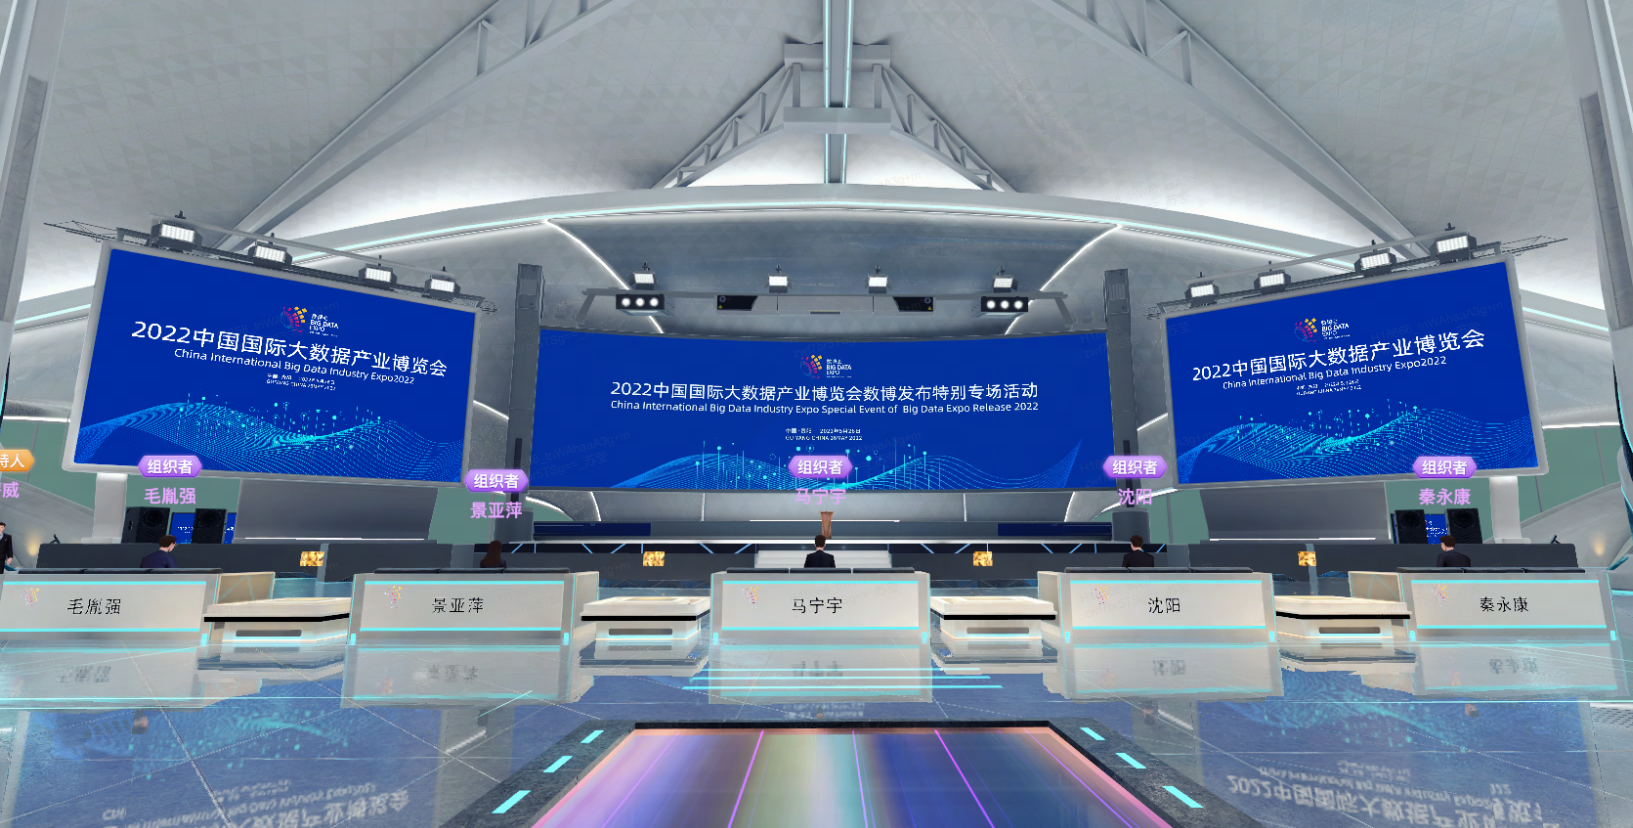 图片展示了一个现代化的会议场所，有屏幕显示2022年信息，桌子前排列着名牌，地面上有彩色灯光。